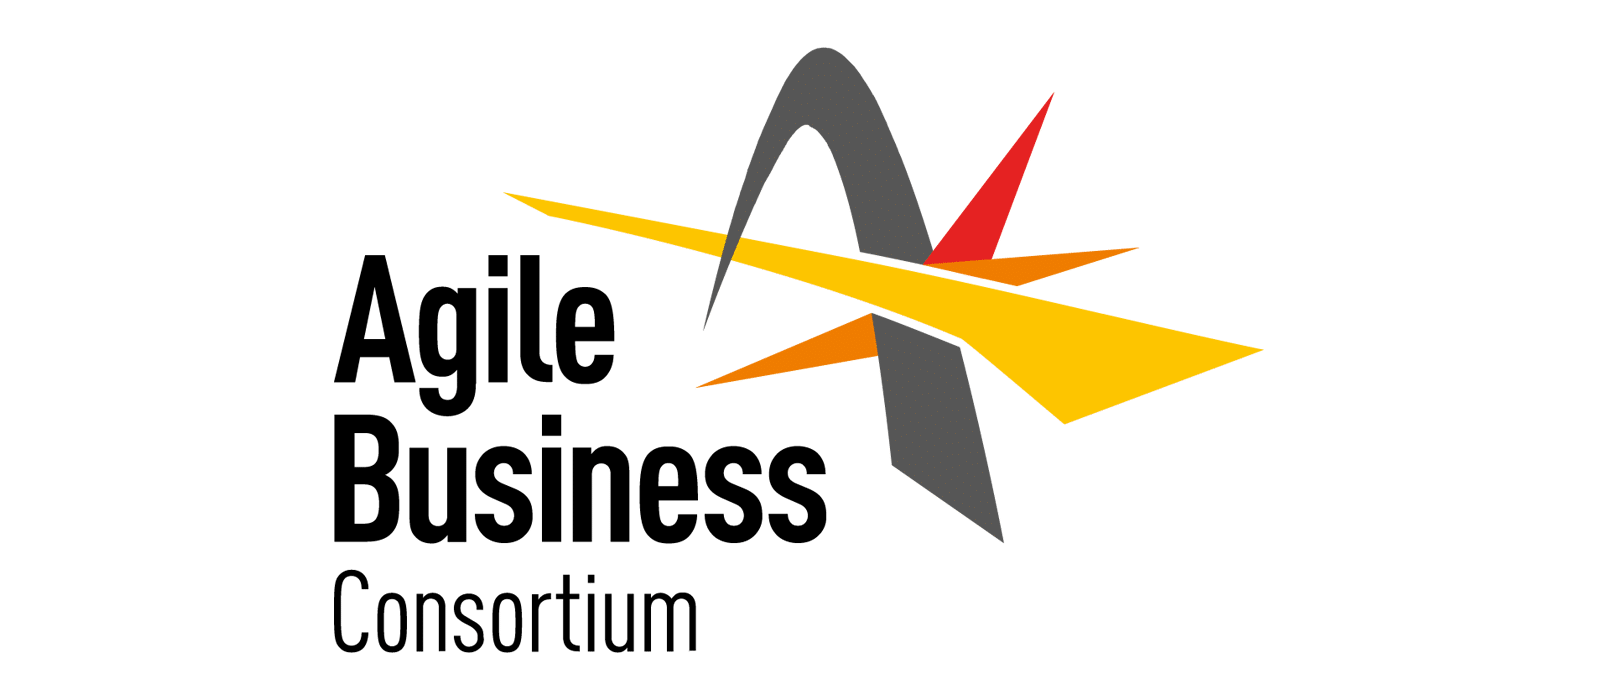 Agile Business Consortium Ltd.